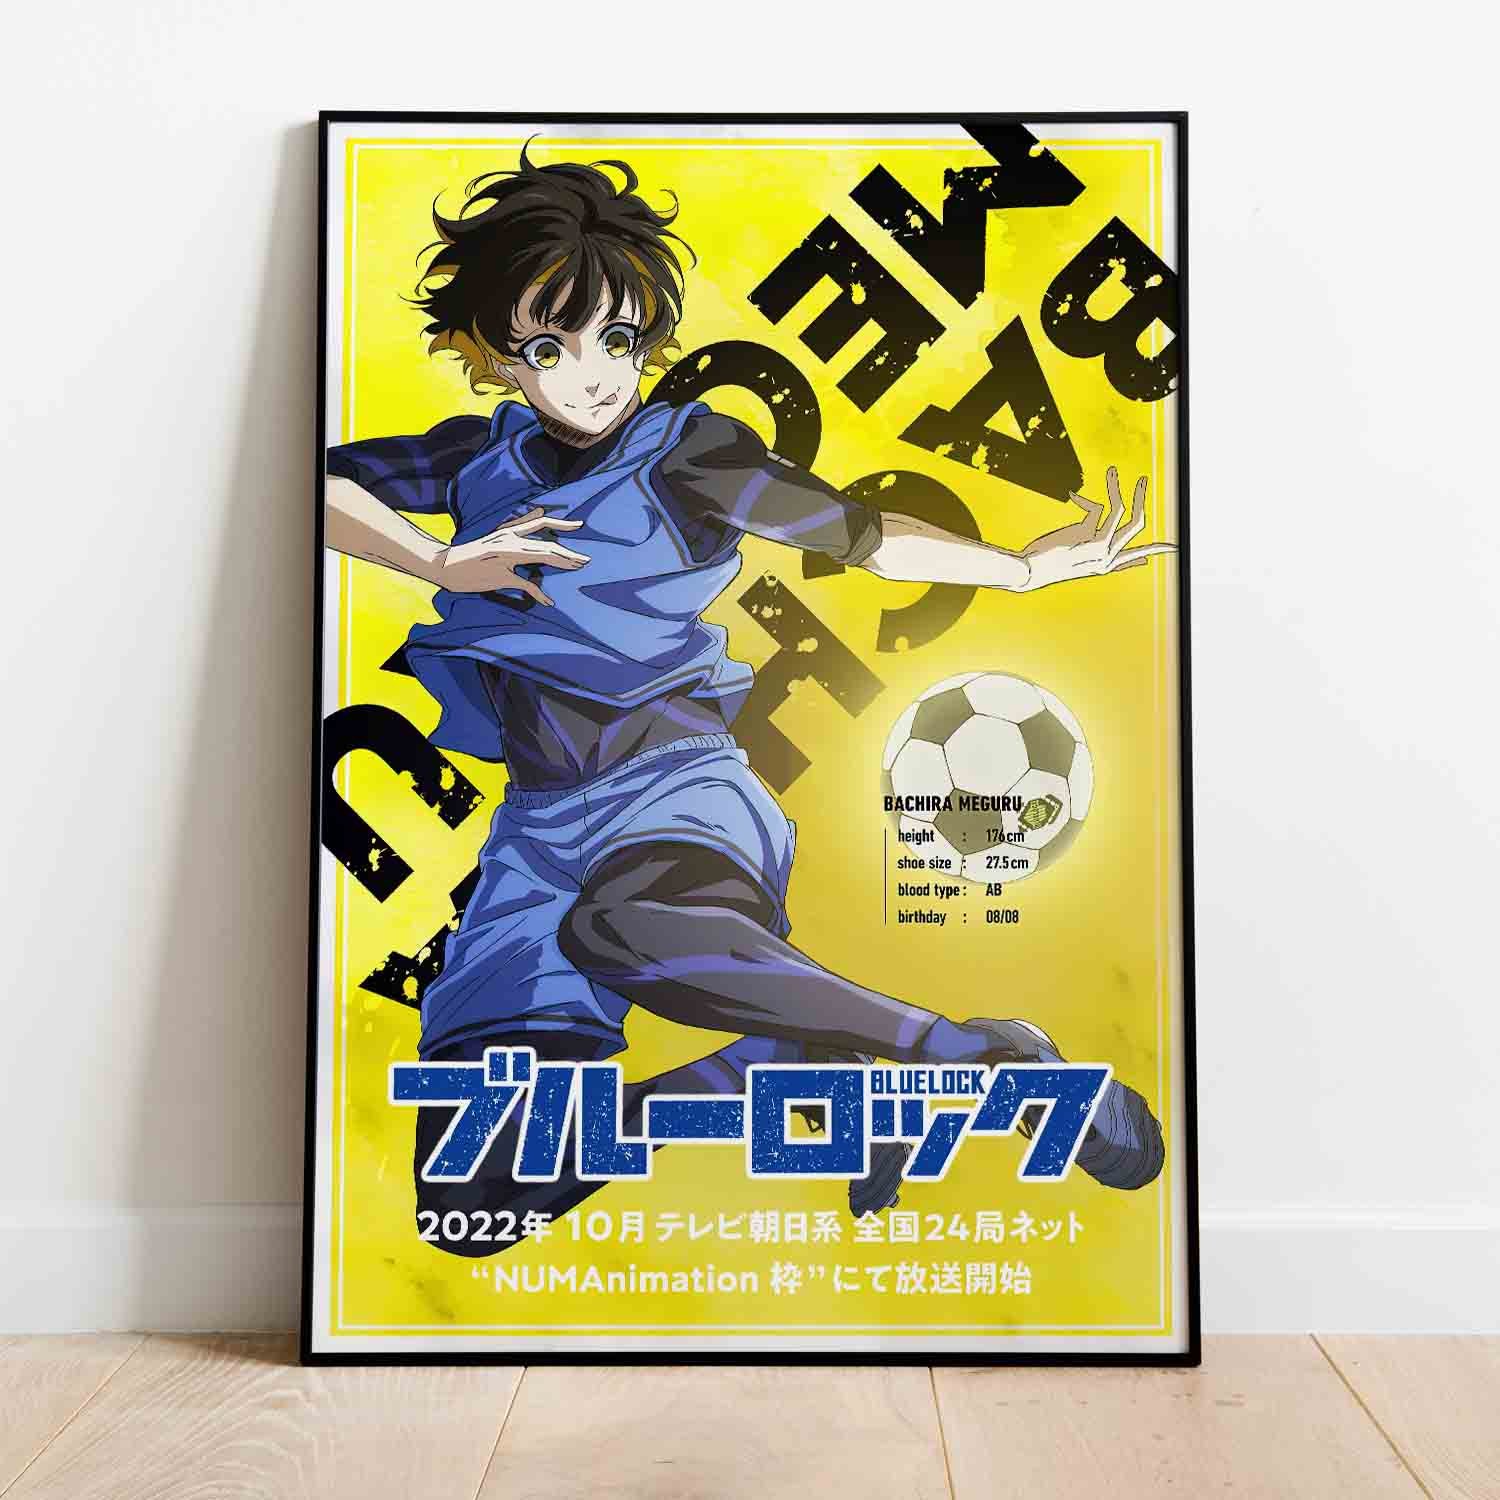 Bachira Wallpaper | Anime wallpaper, Aesthetic anime, Anime artwork  wallpaper